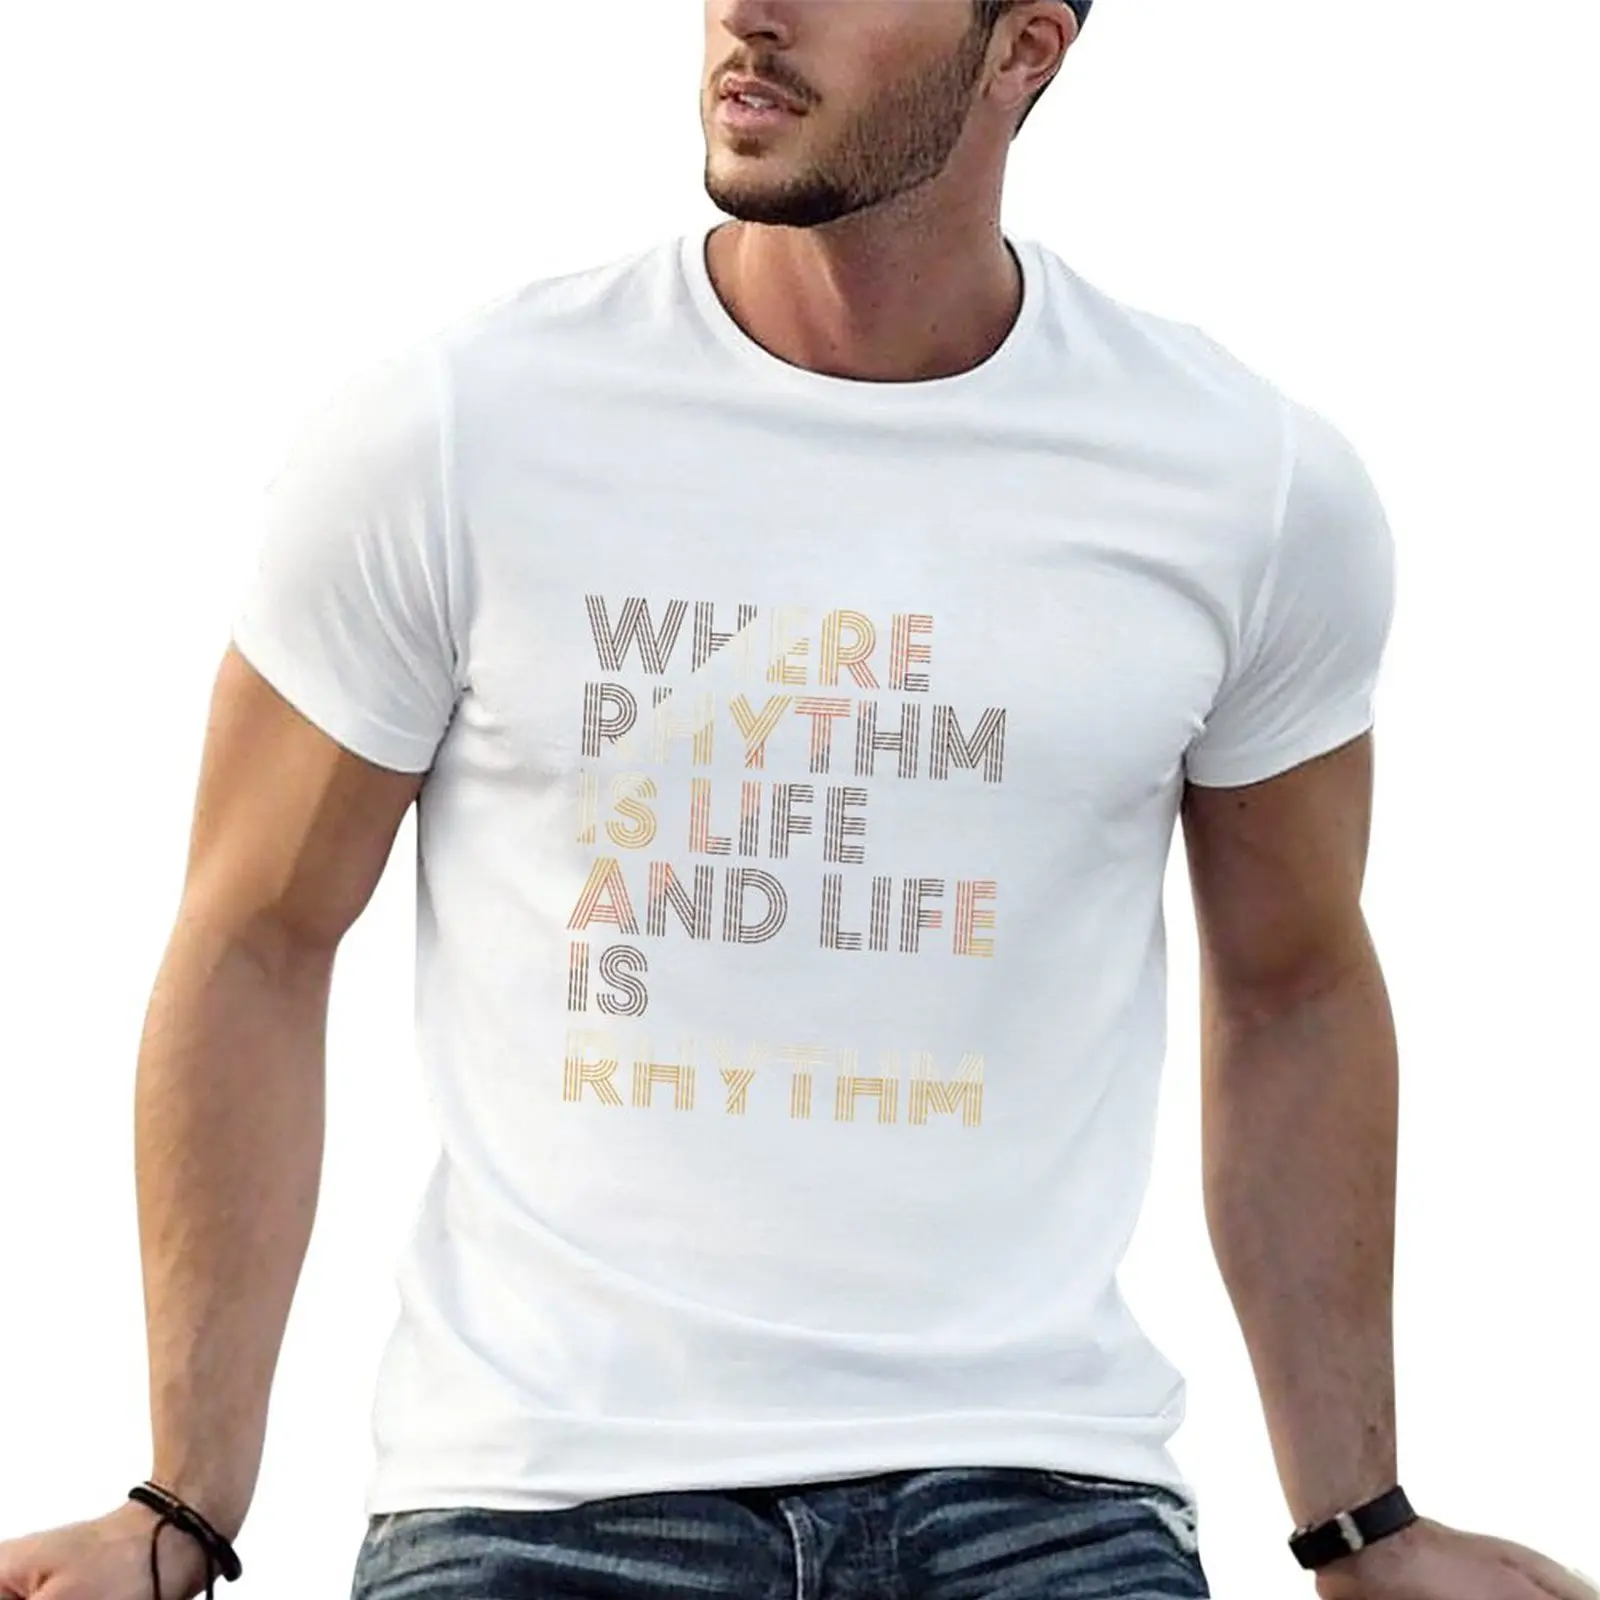 

Футболка с ритмом «Где ритм жизни и жизнь», аниме футболка, простая футболка, Мужская футболка